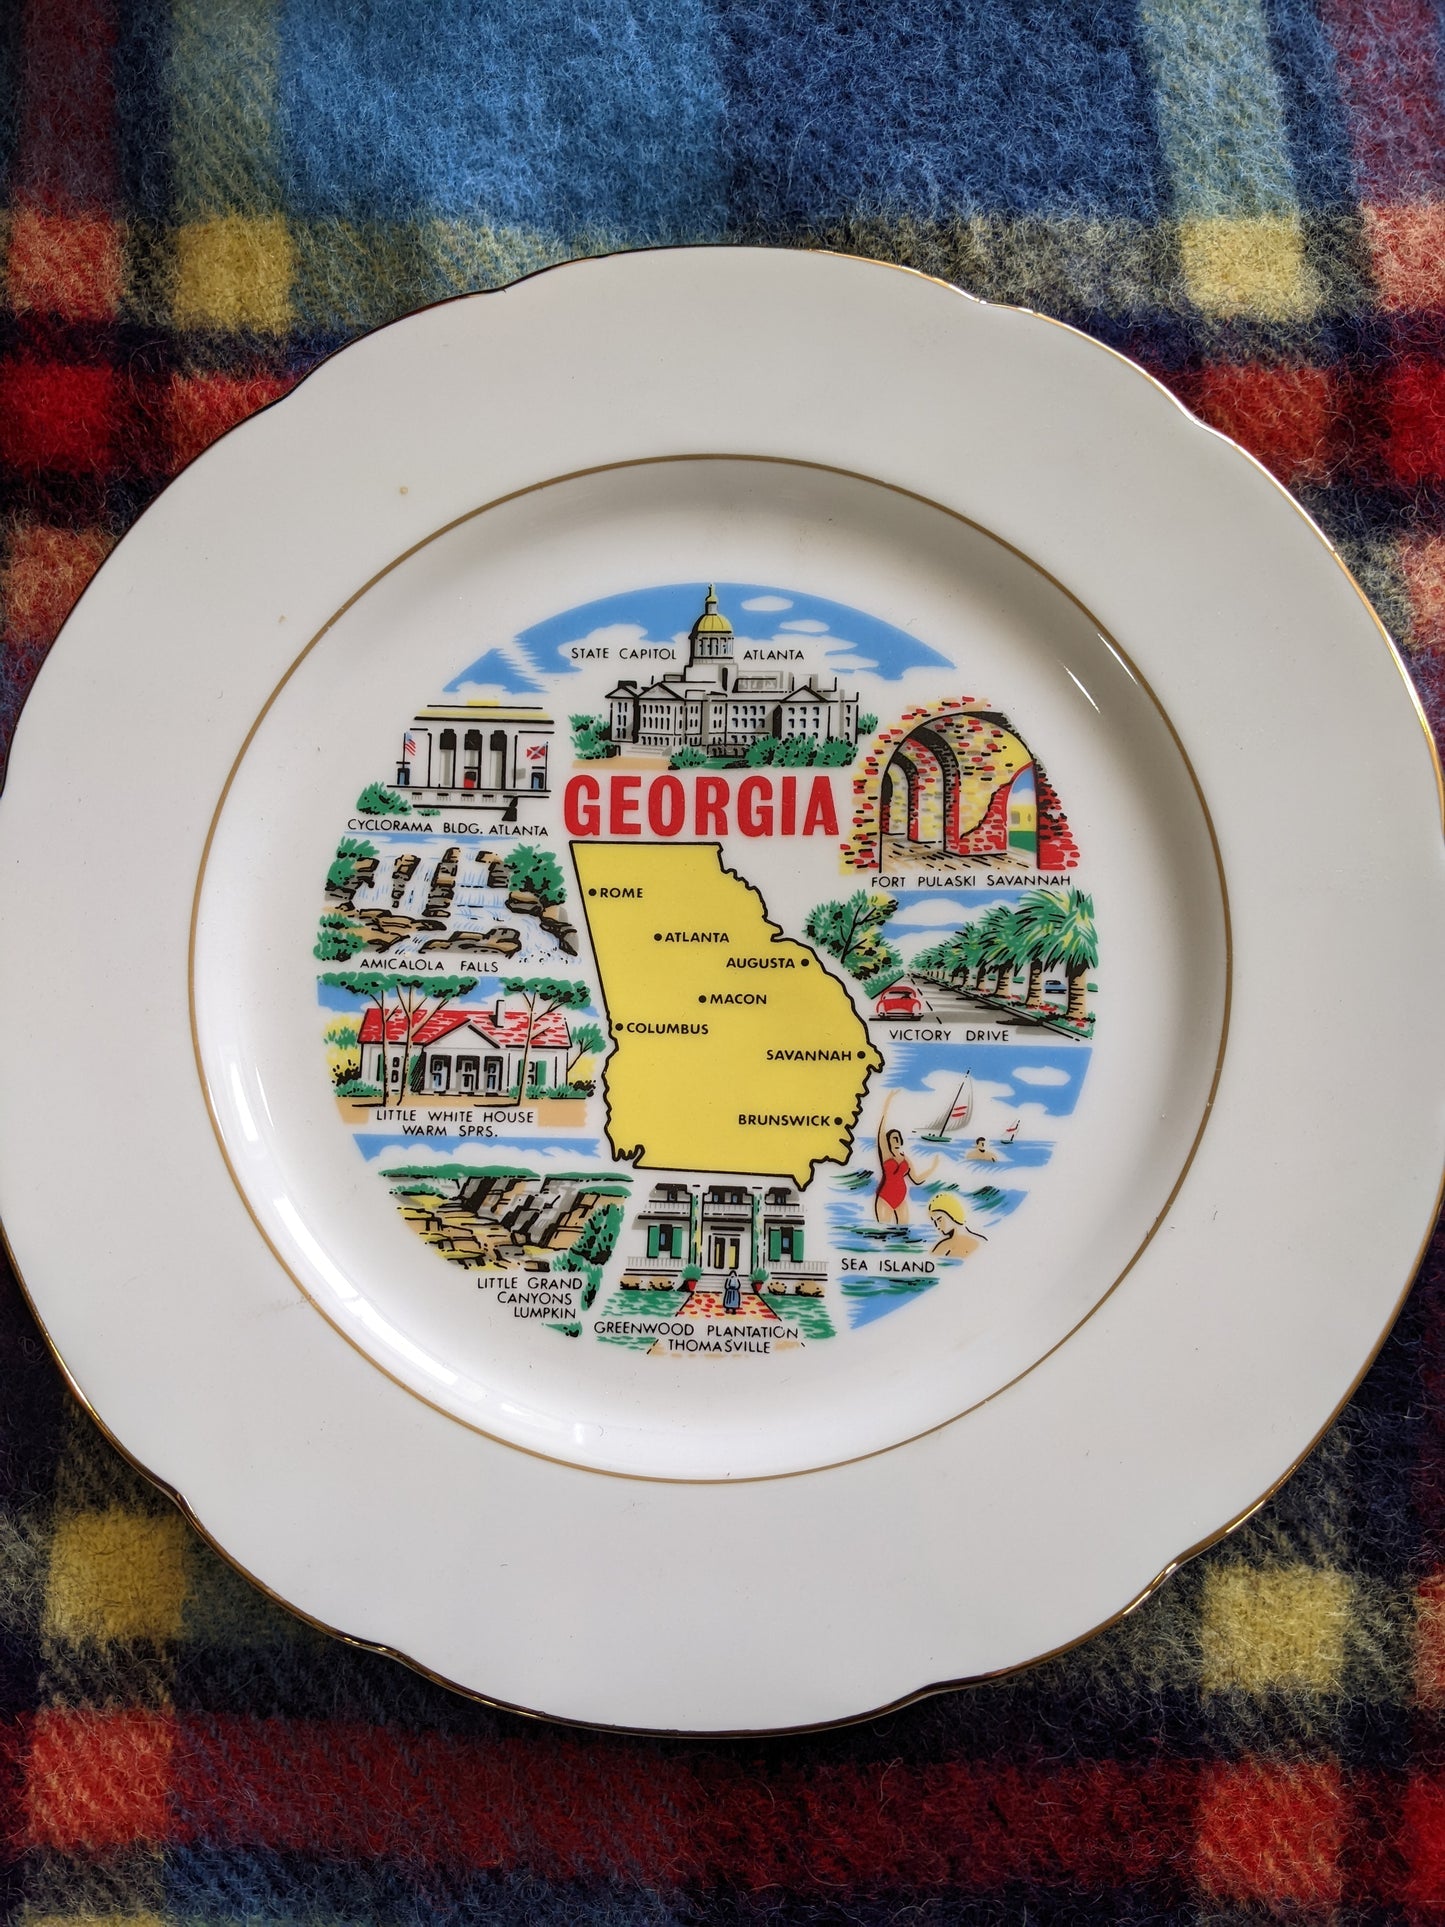 Georgia vintage plate